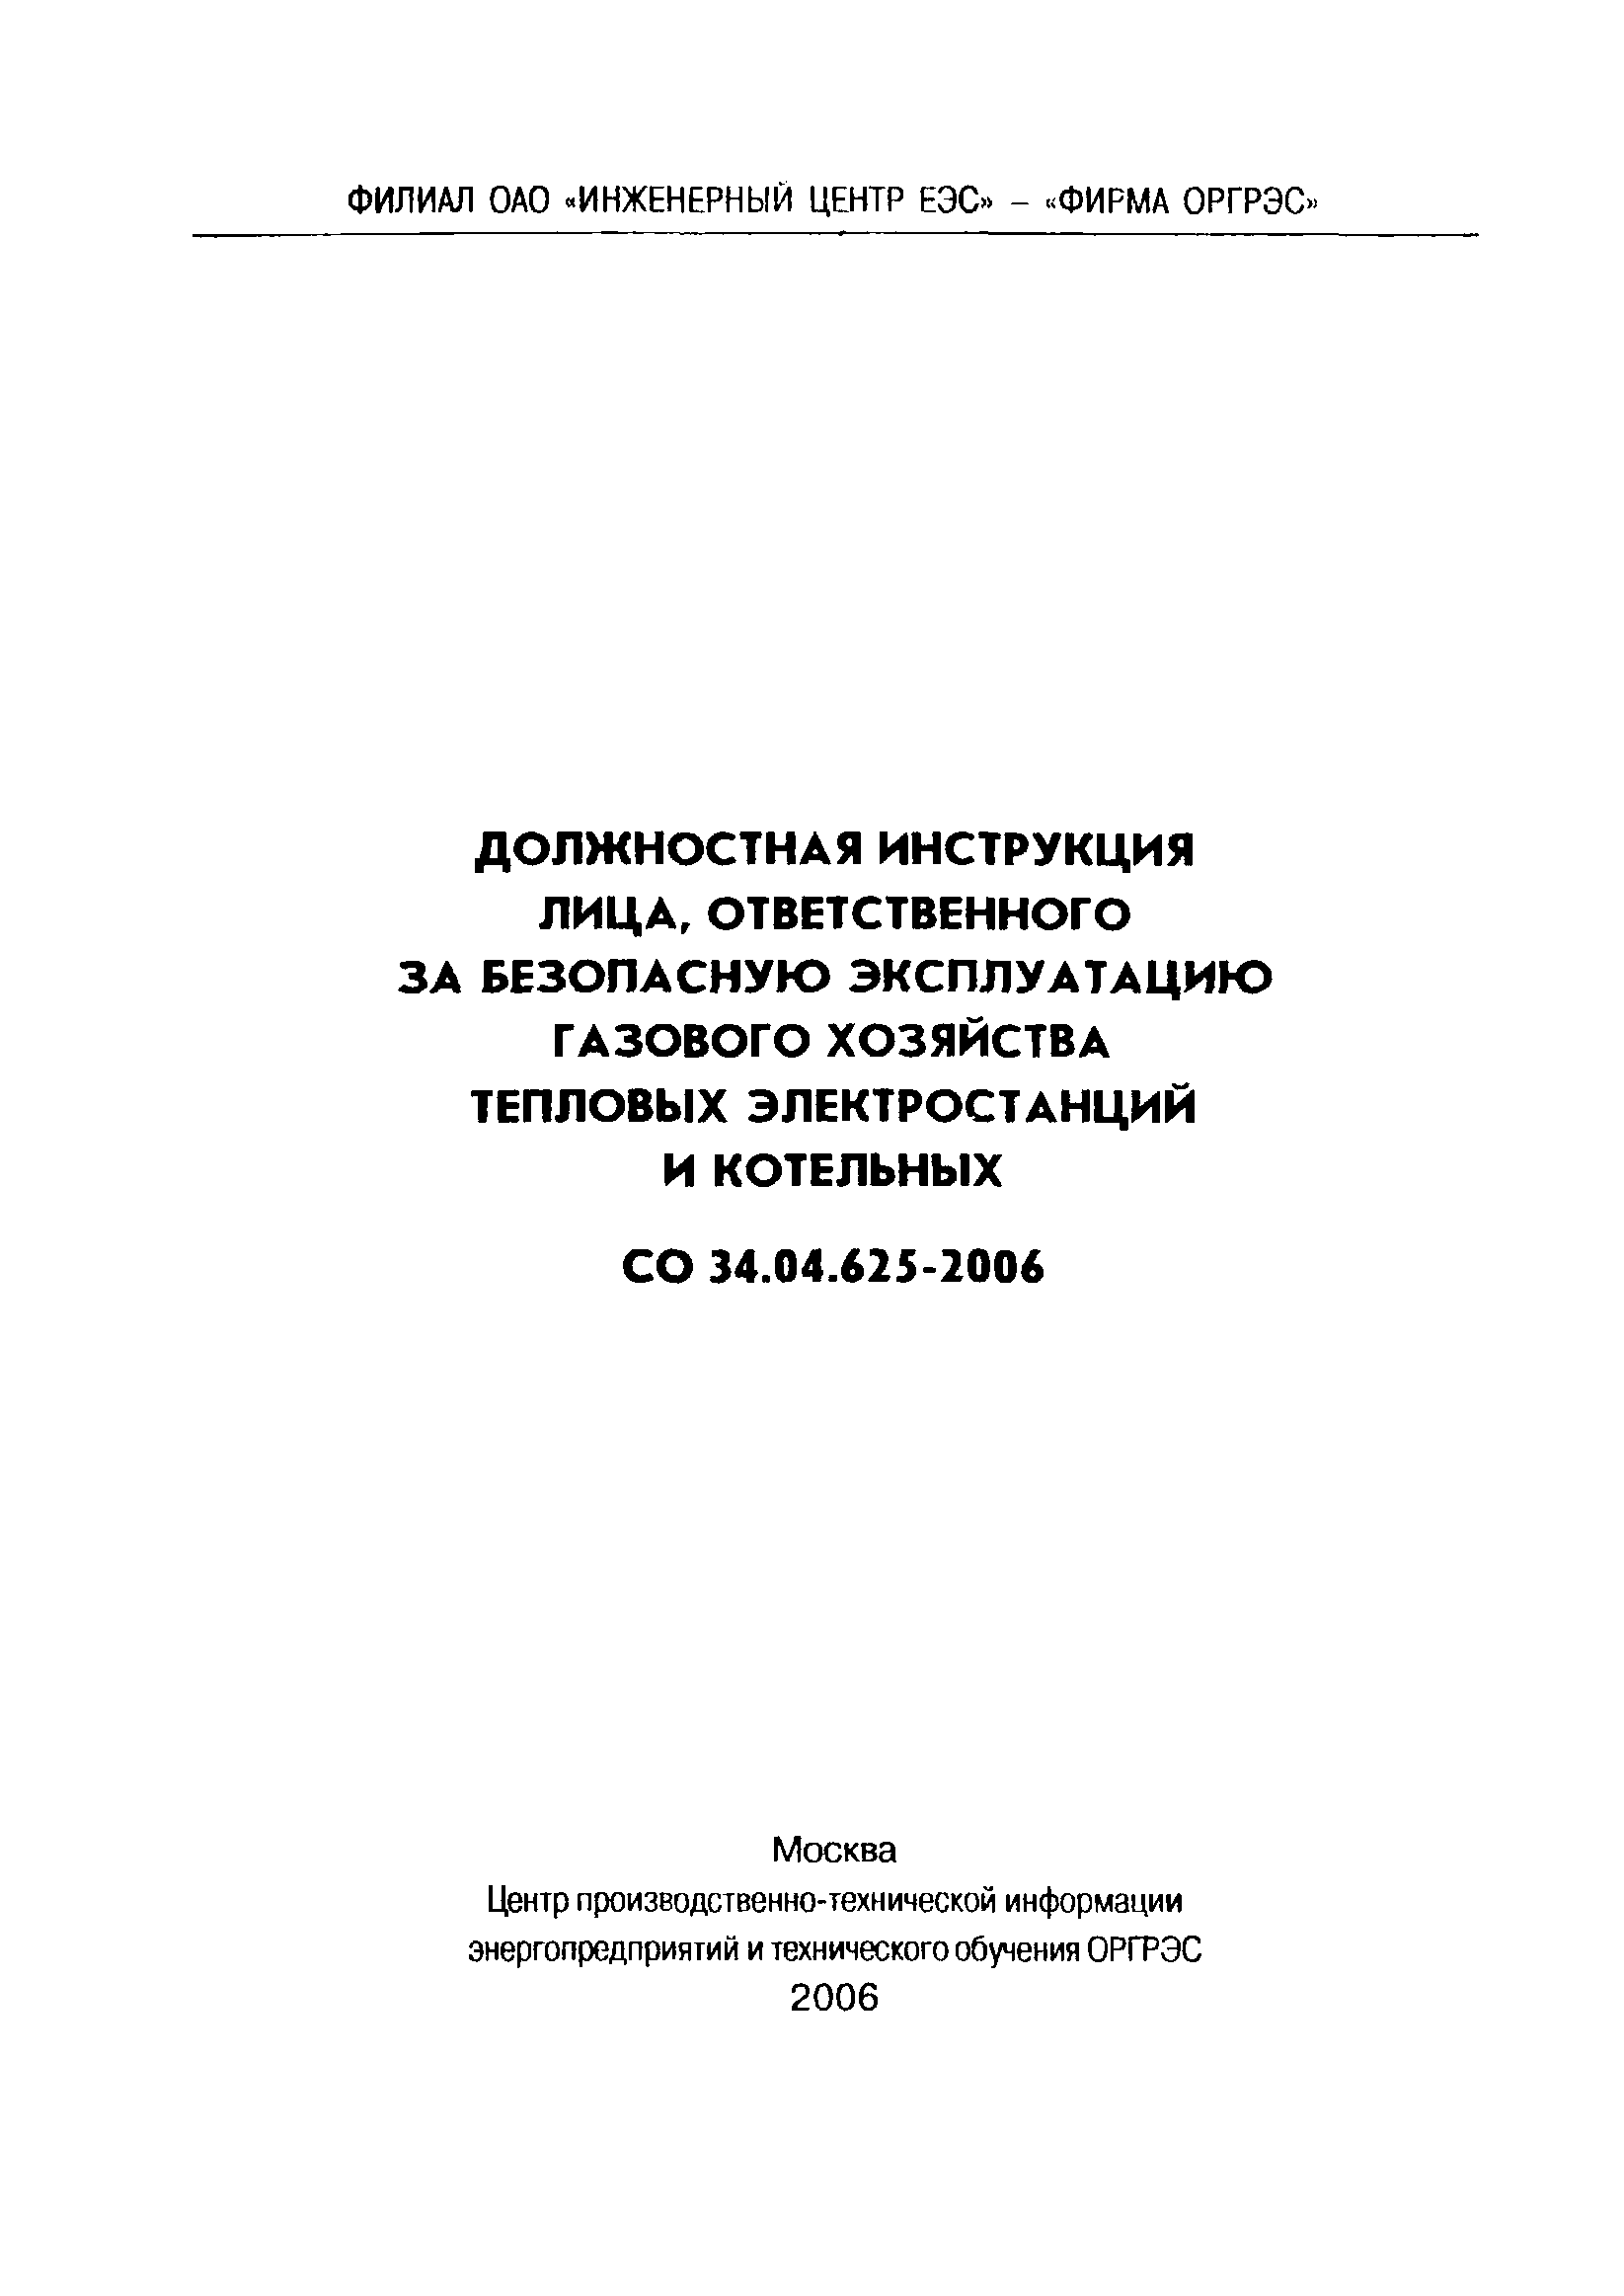 Скачать СО 34.04.625-2006 Должностная Инструкция Лица.